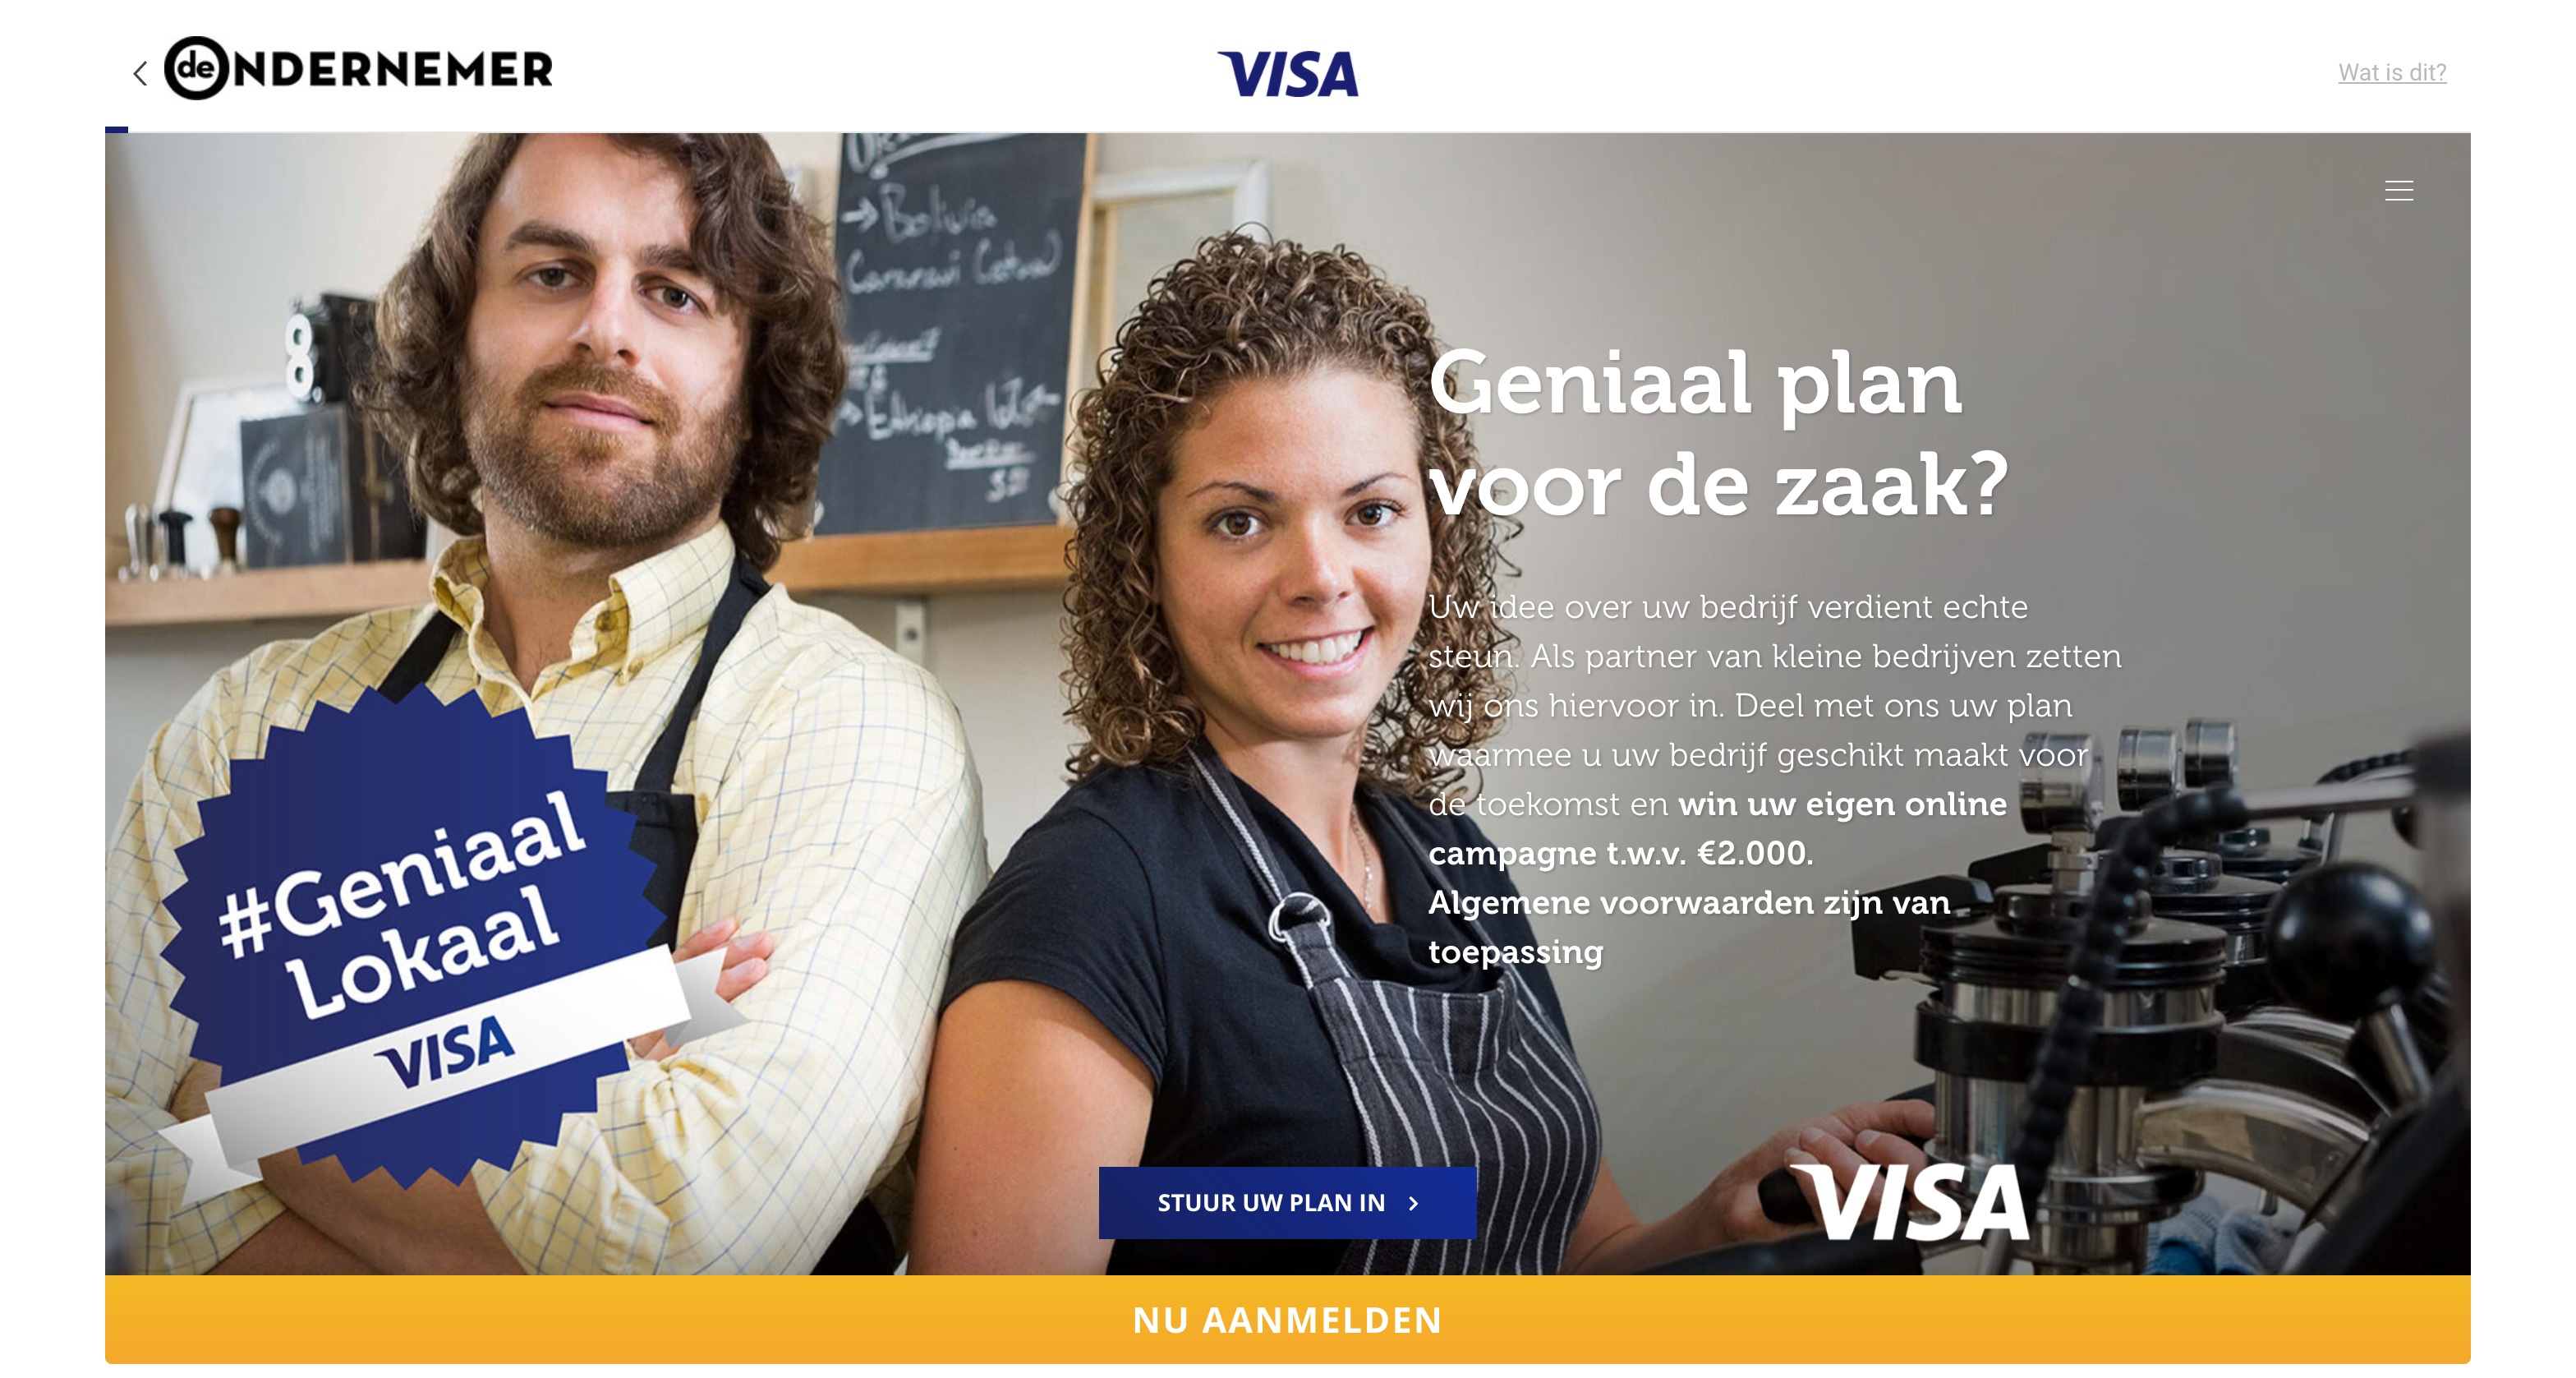 visa-deondernmener-campaign-1